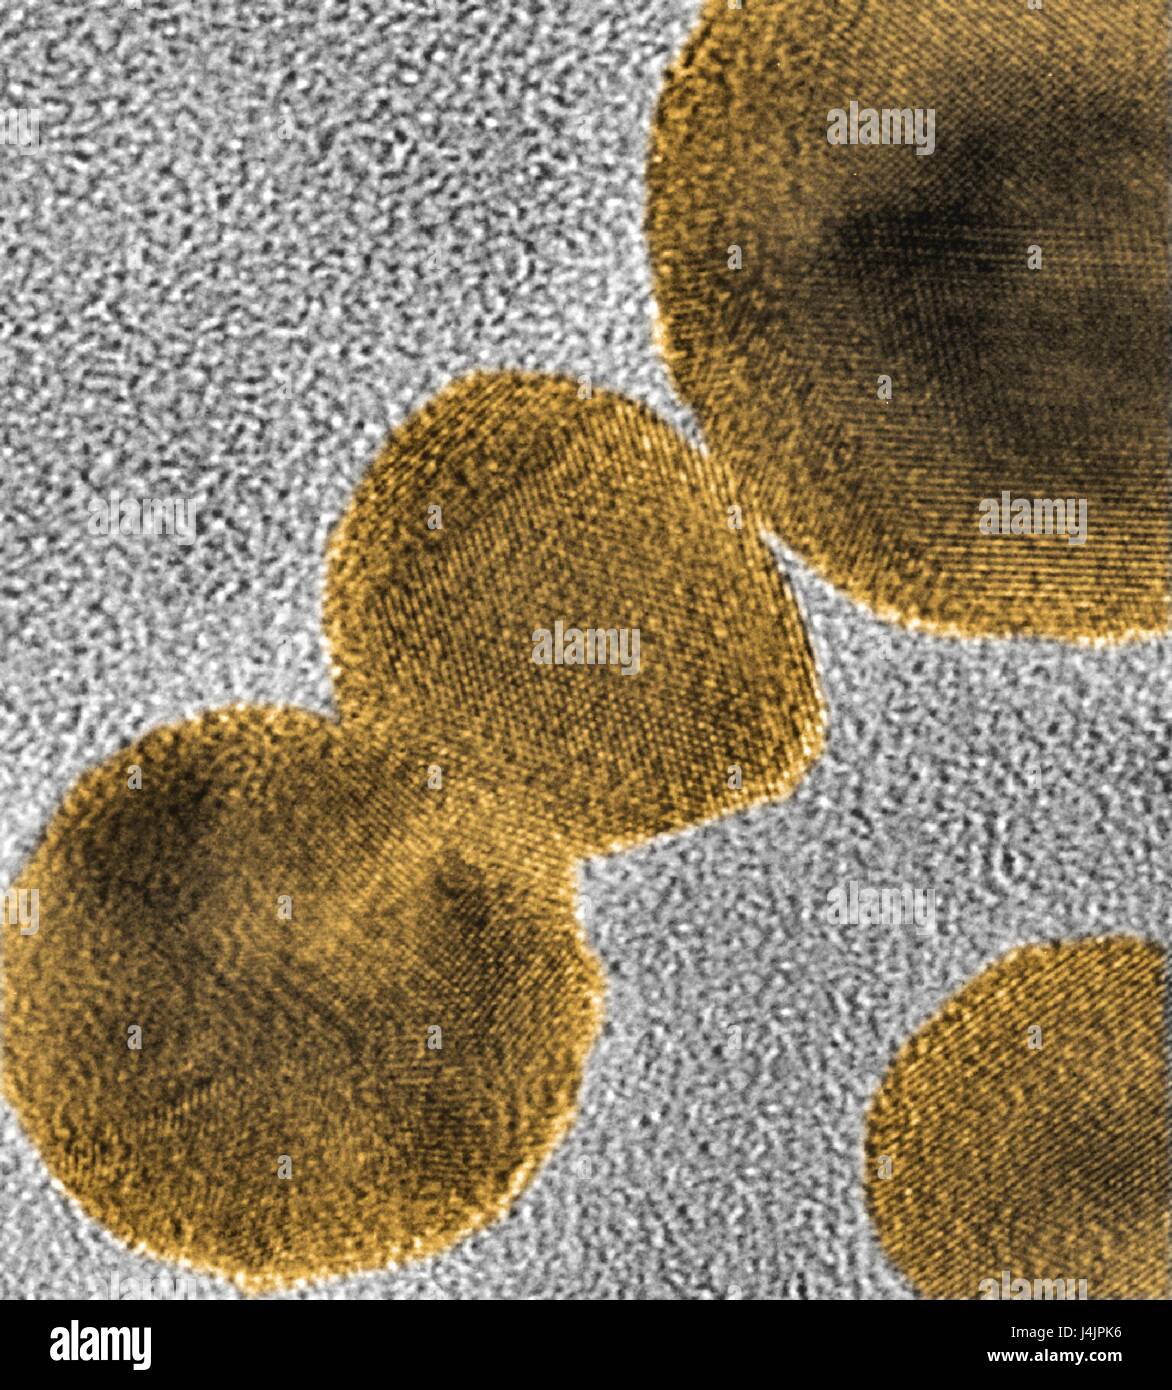 Gold-Nanopartikel. Farbige Transmission Electron Schliffbild (TEM) von gold-Nanopartikeln durch Laserablation eine Masse gold-Ziel in Wasser gebildet. Das Raster in Nahaufnahmen zu sehen sind die atomare Flugzeuge innerhalb der Nanopartikel. Diese Forschung involv Stockfoto